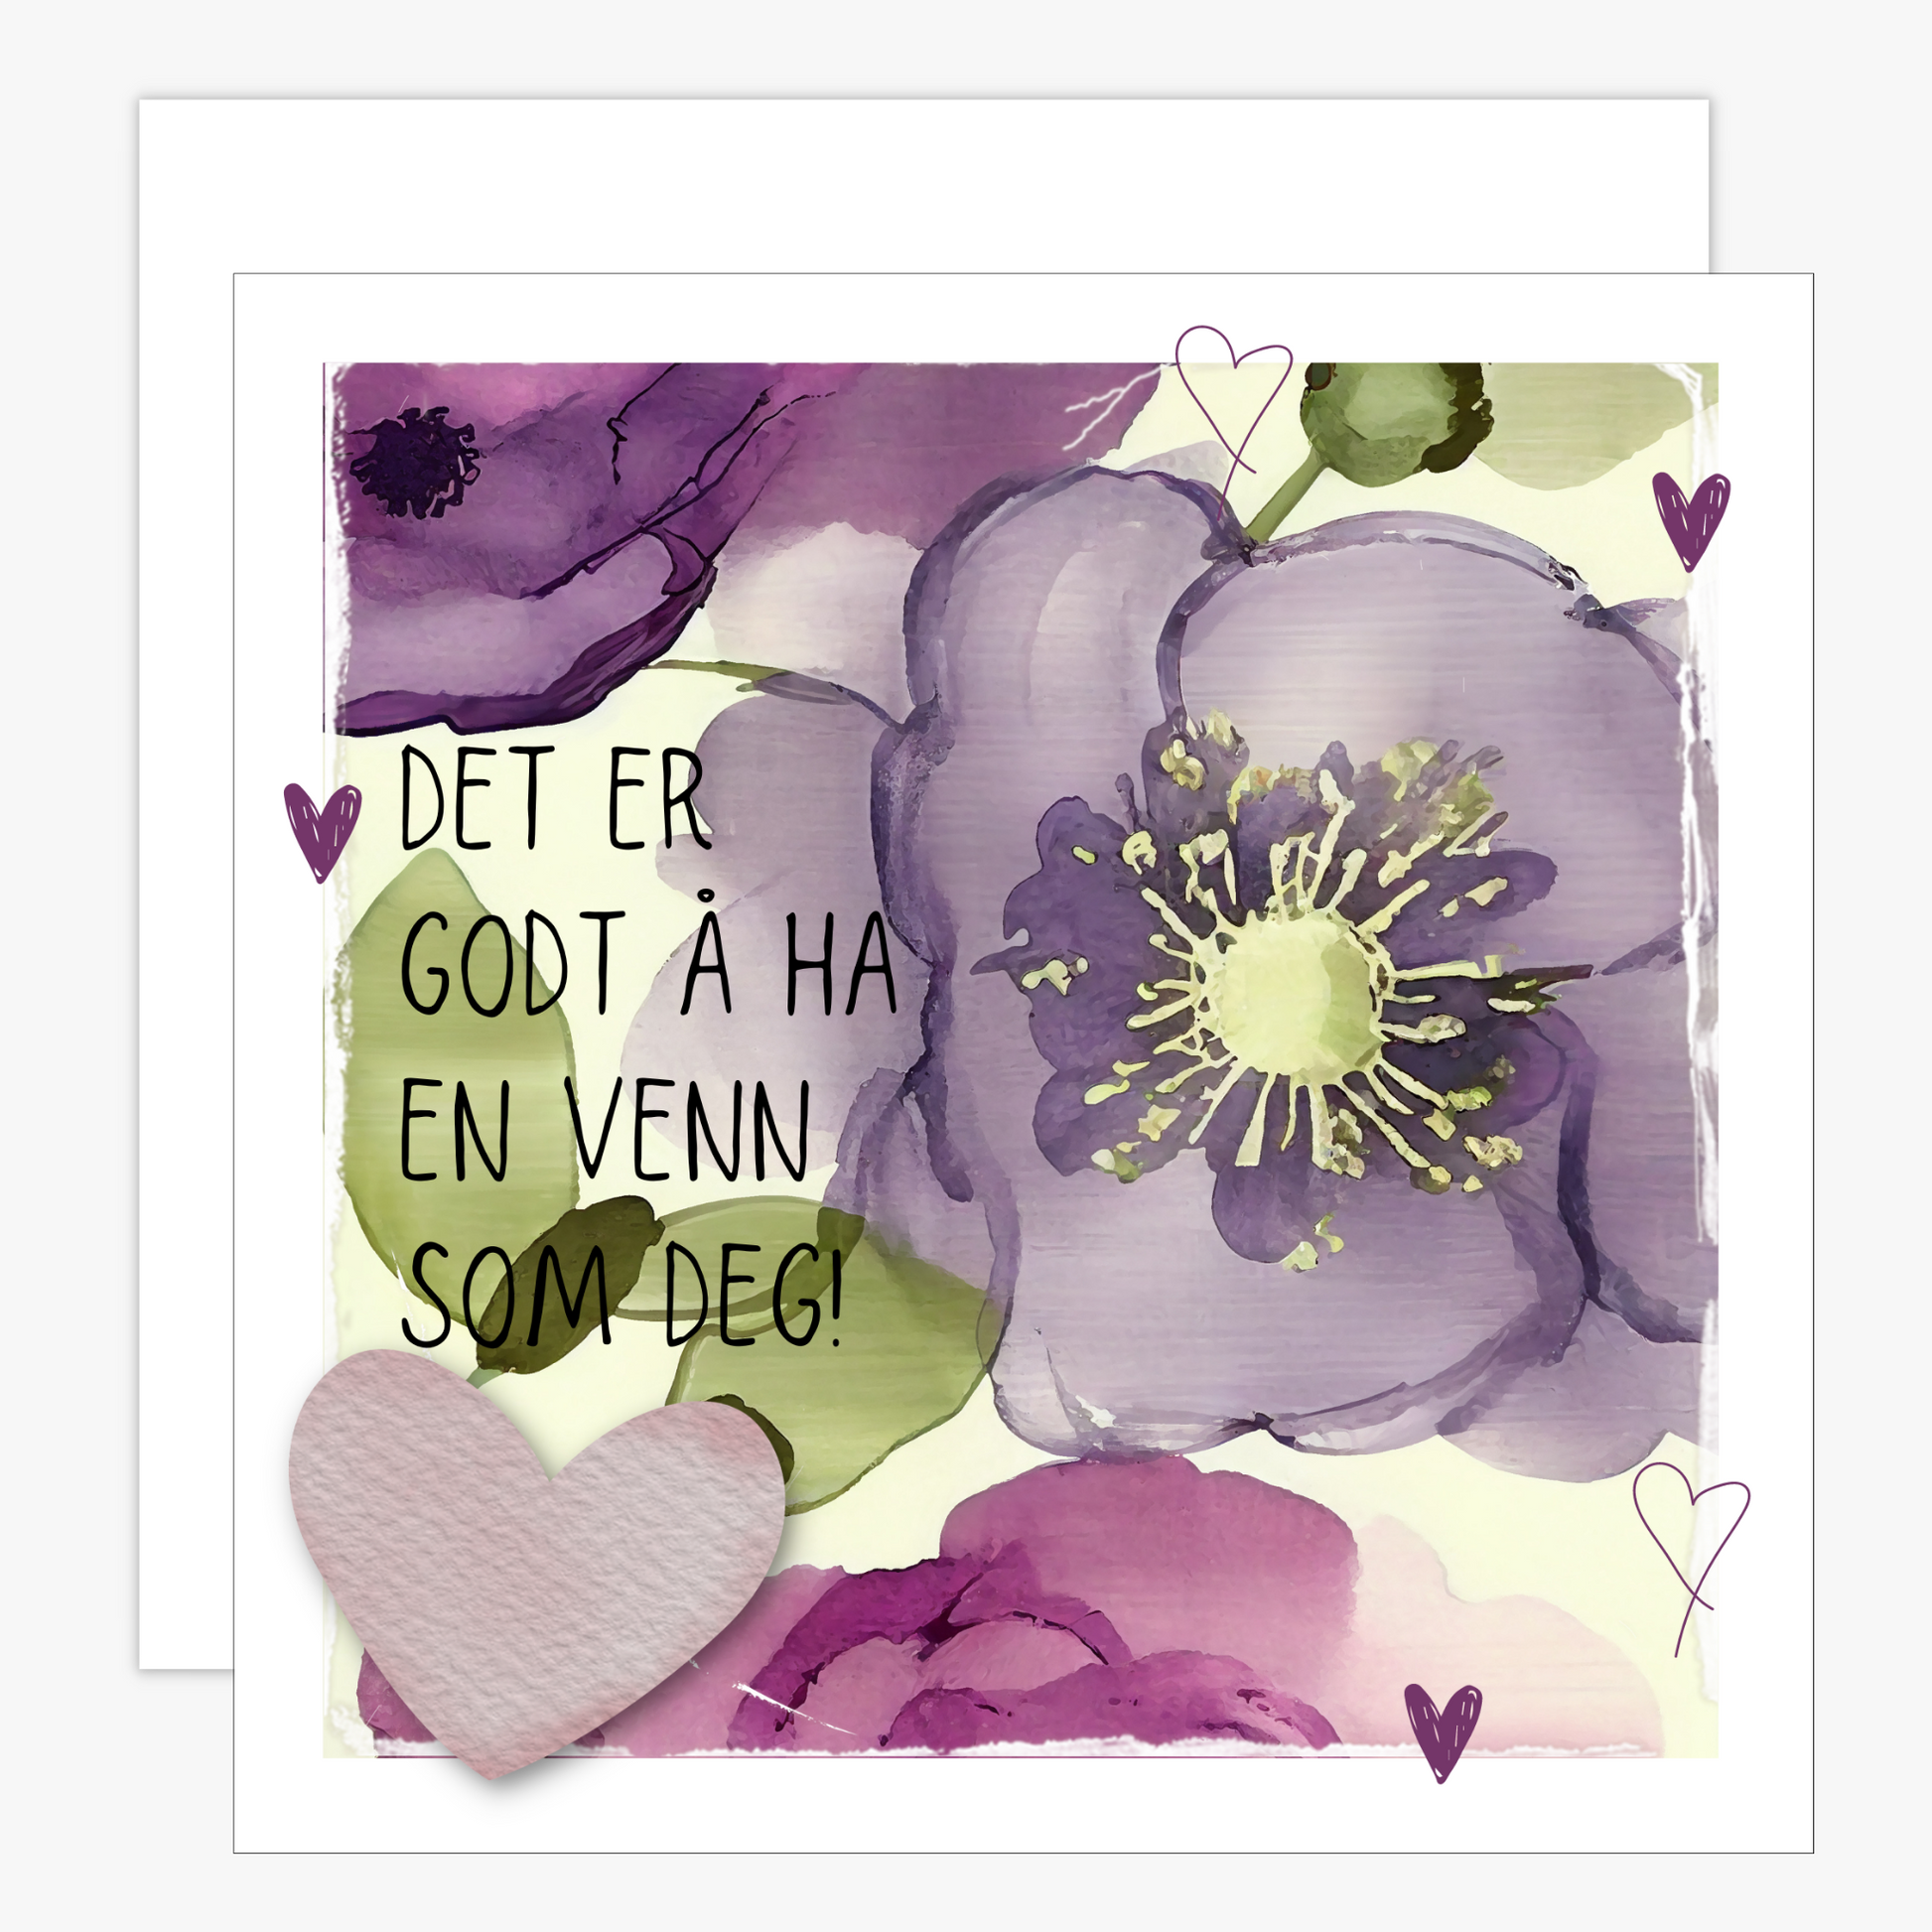 Kort med tekst "Det er godt  ha en venn som deg" - med lilla blomster og grønne blader på beige bakgrunn.  Konvolutt er inkludert.